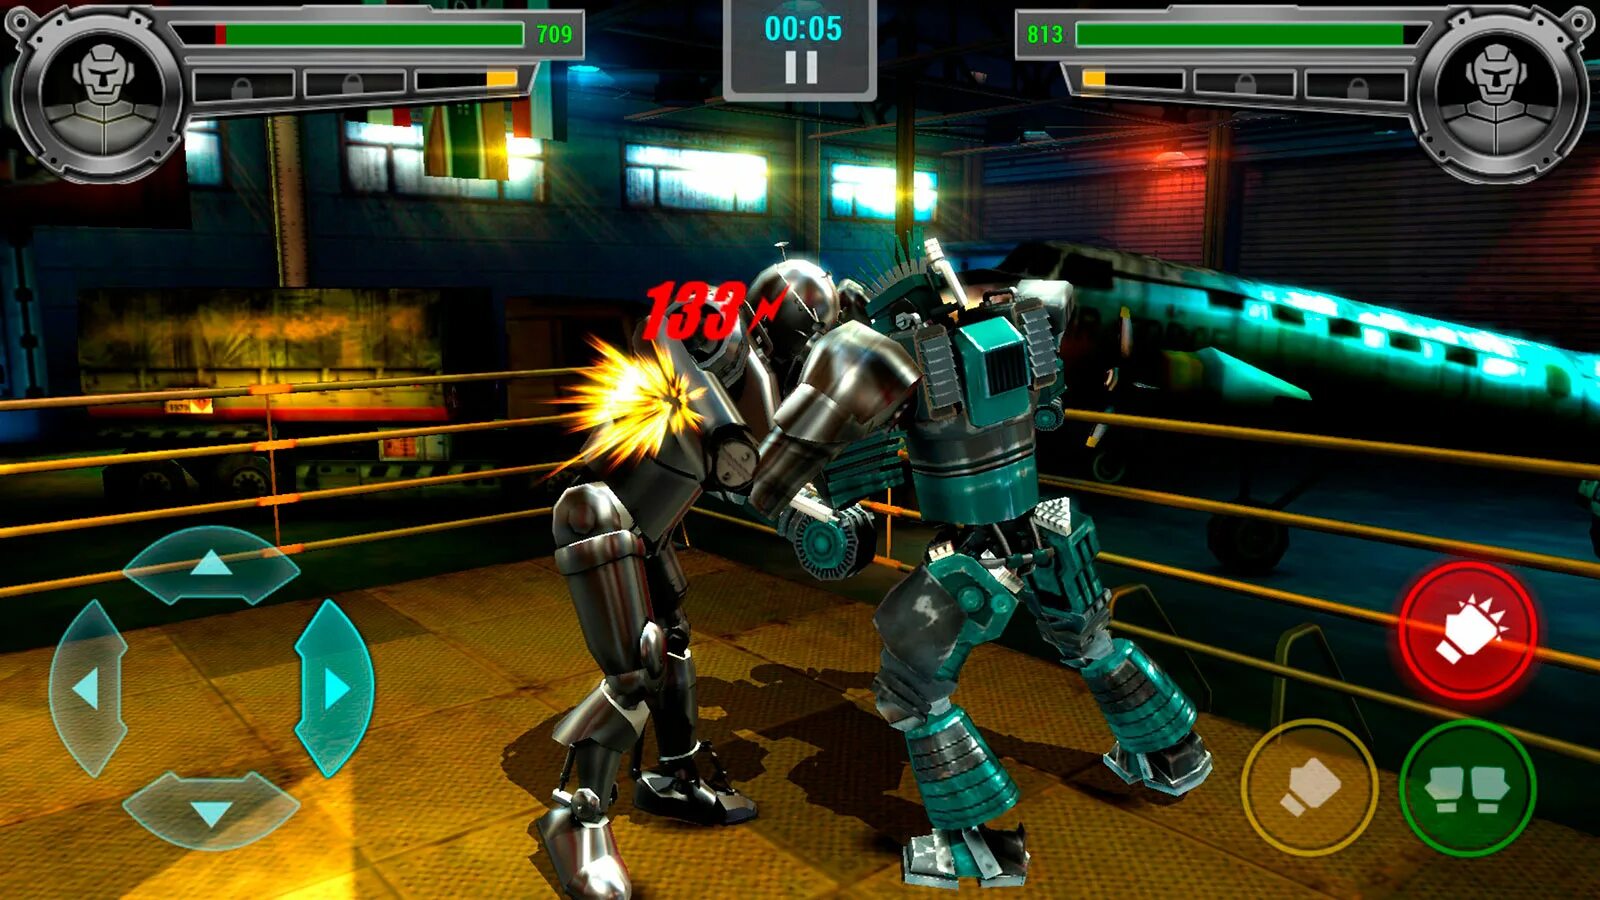 Real Steel Robot Boxing игра. Живая сталь игра Boxing Champions. Real Steel 2 игра. Real Steel игра андроид атом. Включи игры скачиваемые настоящие